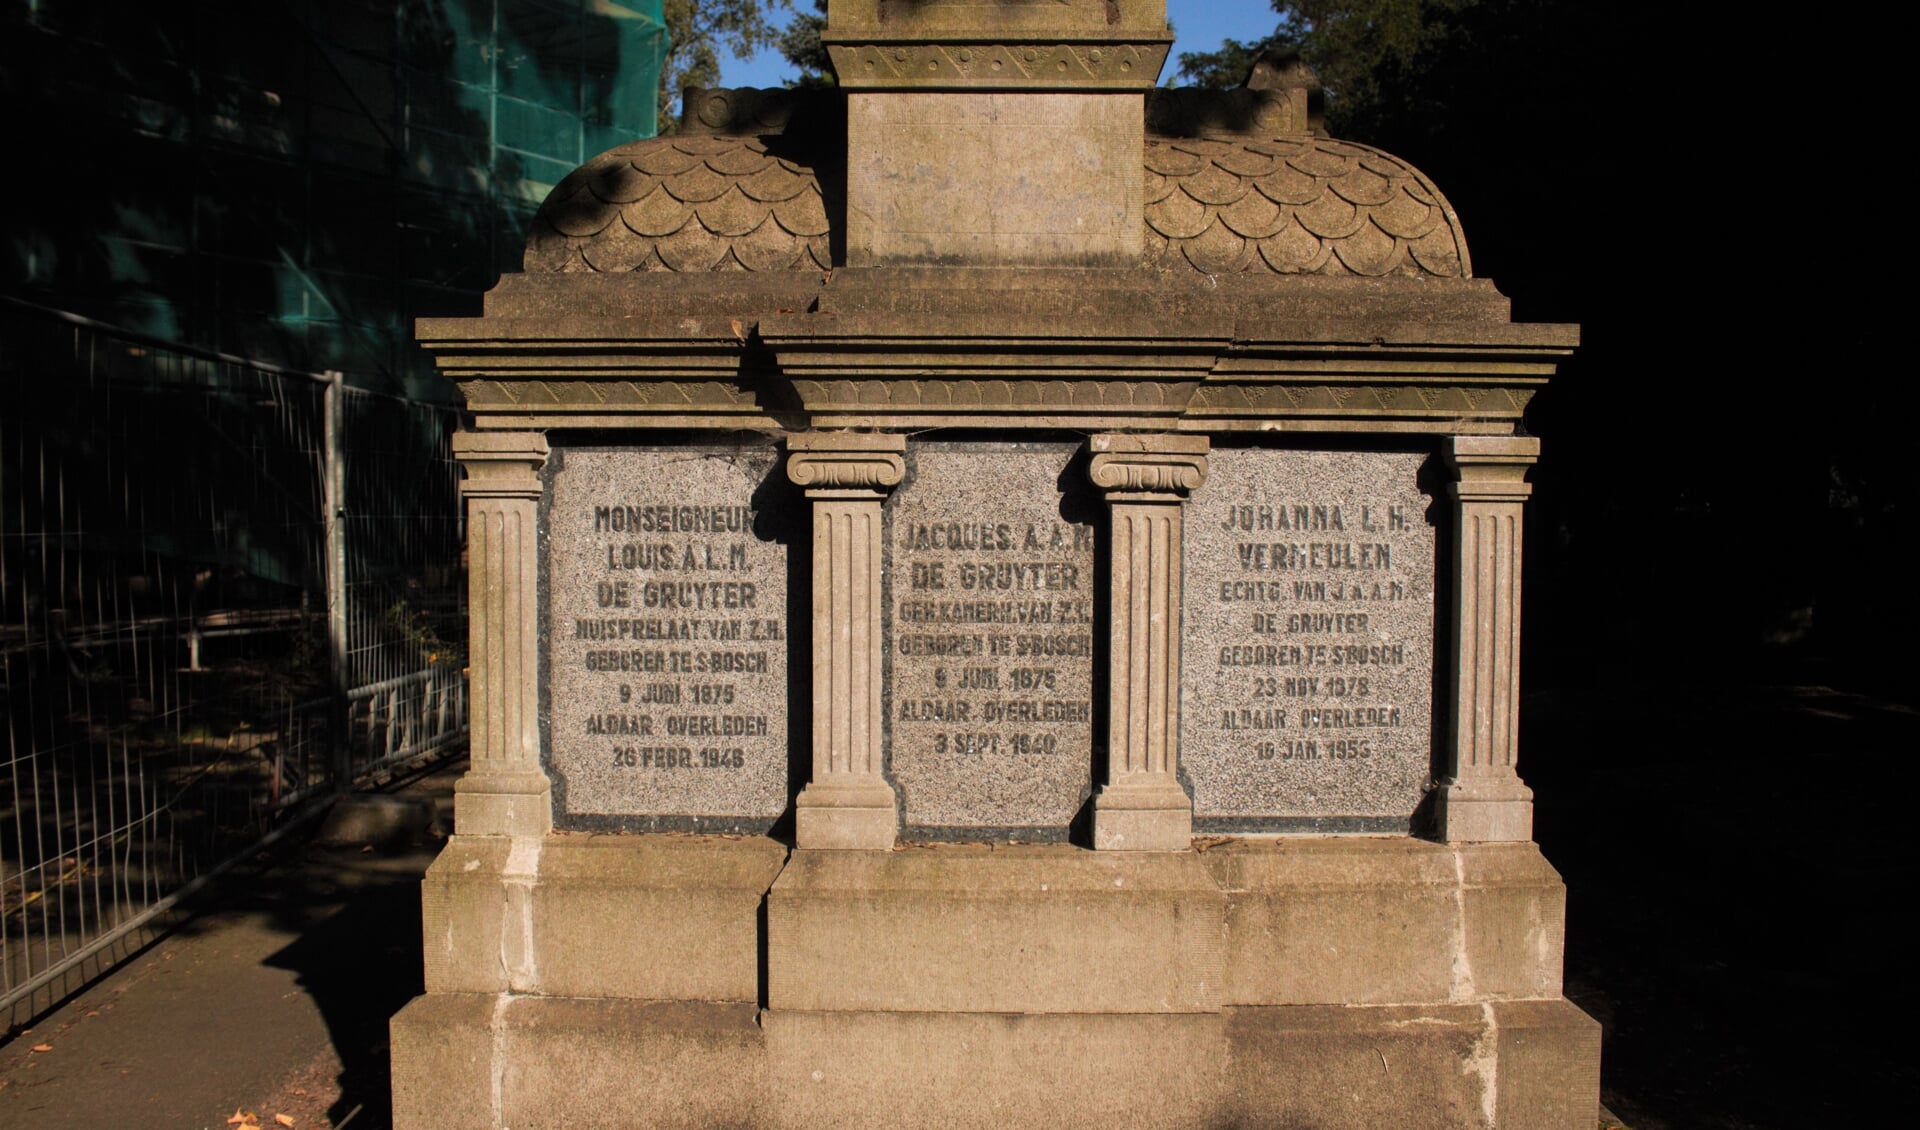 De familie De Gruyter heeft een groot familiegraf. In de grafkelder liggen onder andere Louis de Gruyter en zijn vrouw begraven.